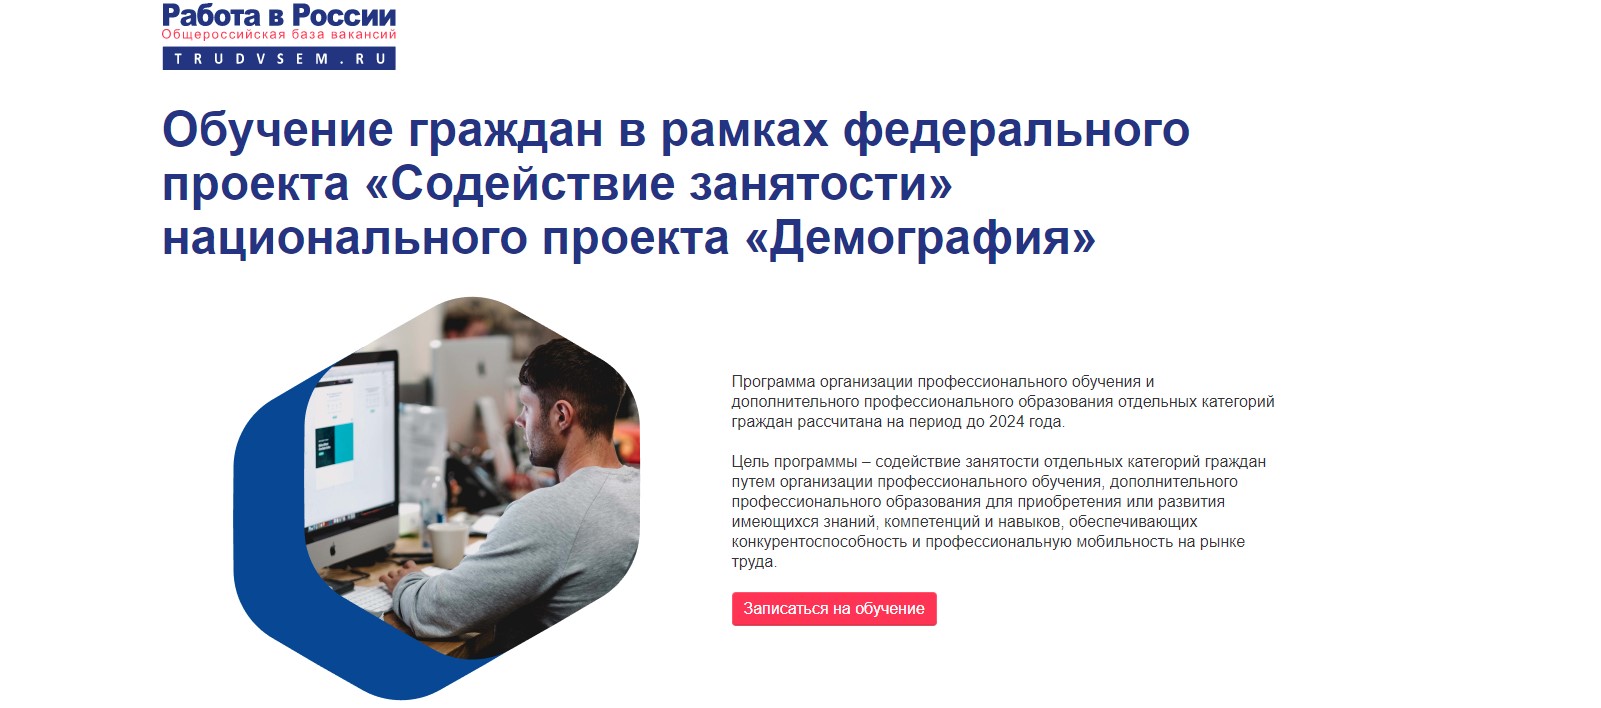 Обучение граждан в рамках федерального проекта «Содействие занятости» национального проекта «Демография» в Белгородской области